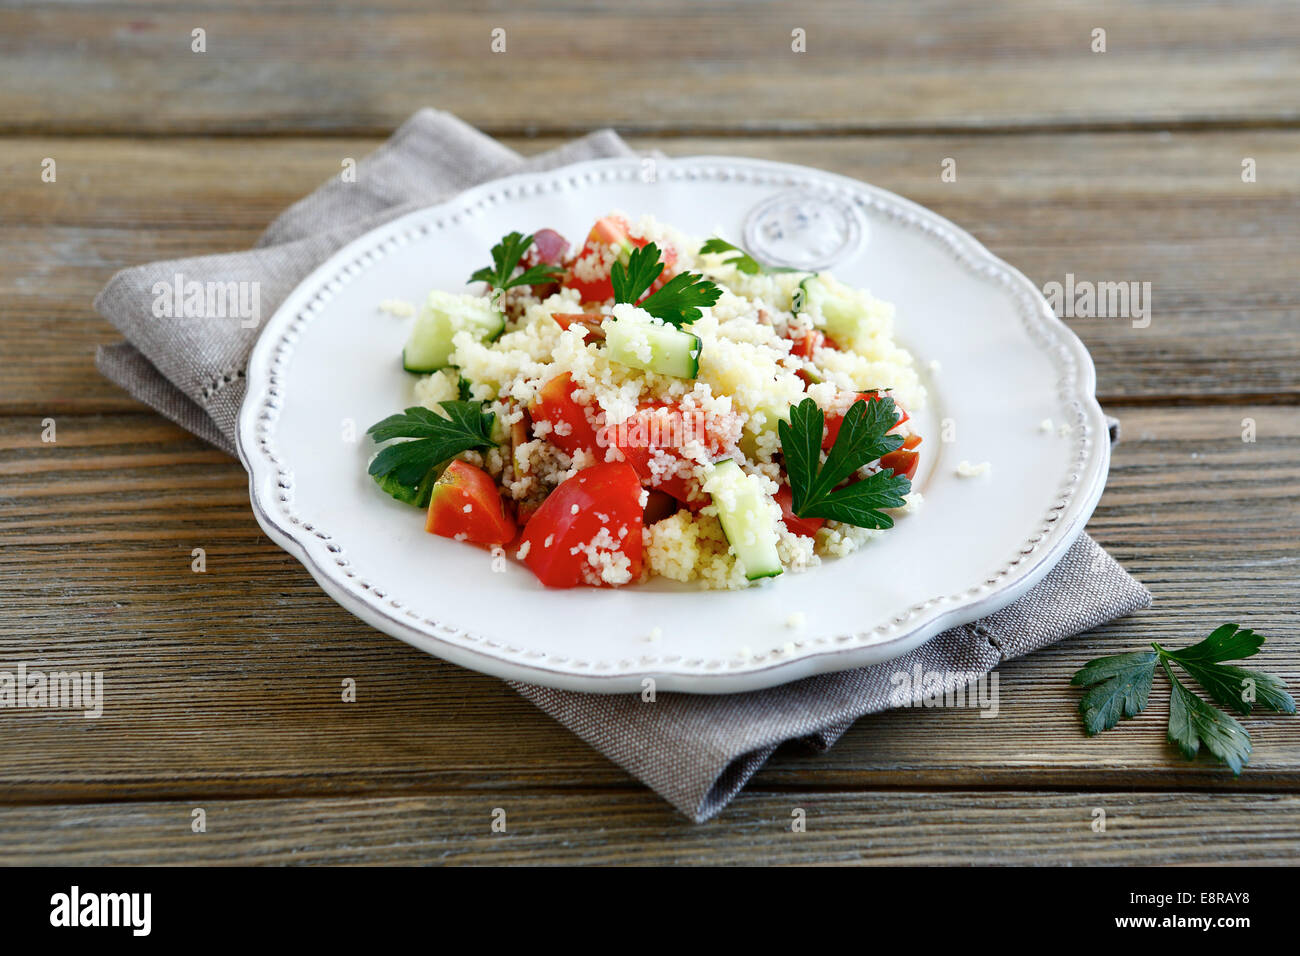 Délicieux avec la salade de couscous et légumes arabe sur une assiette, de l'alimentation sur un panneaux de bois Banque D'Images